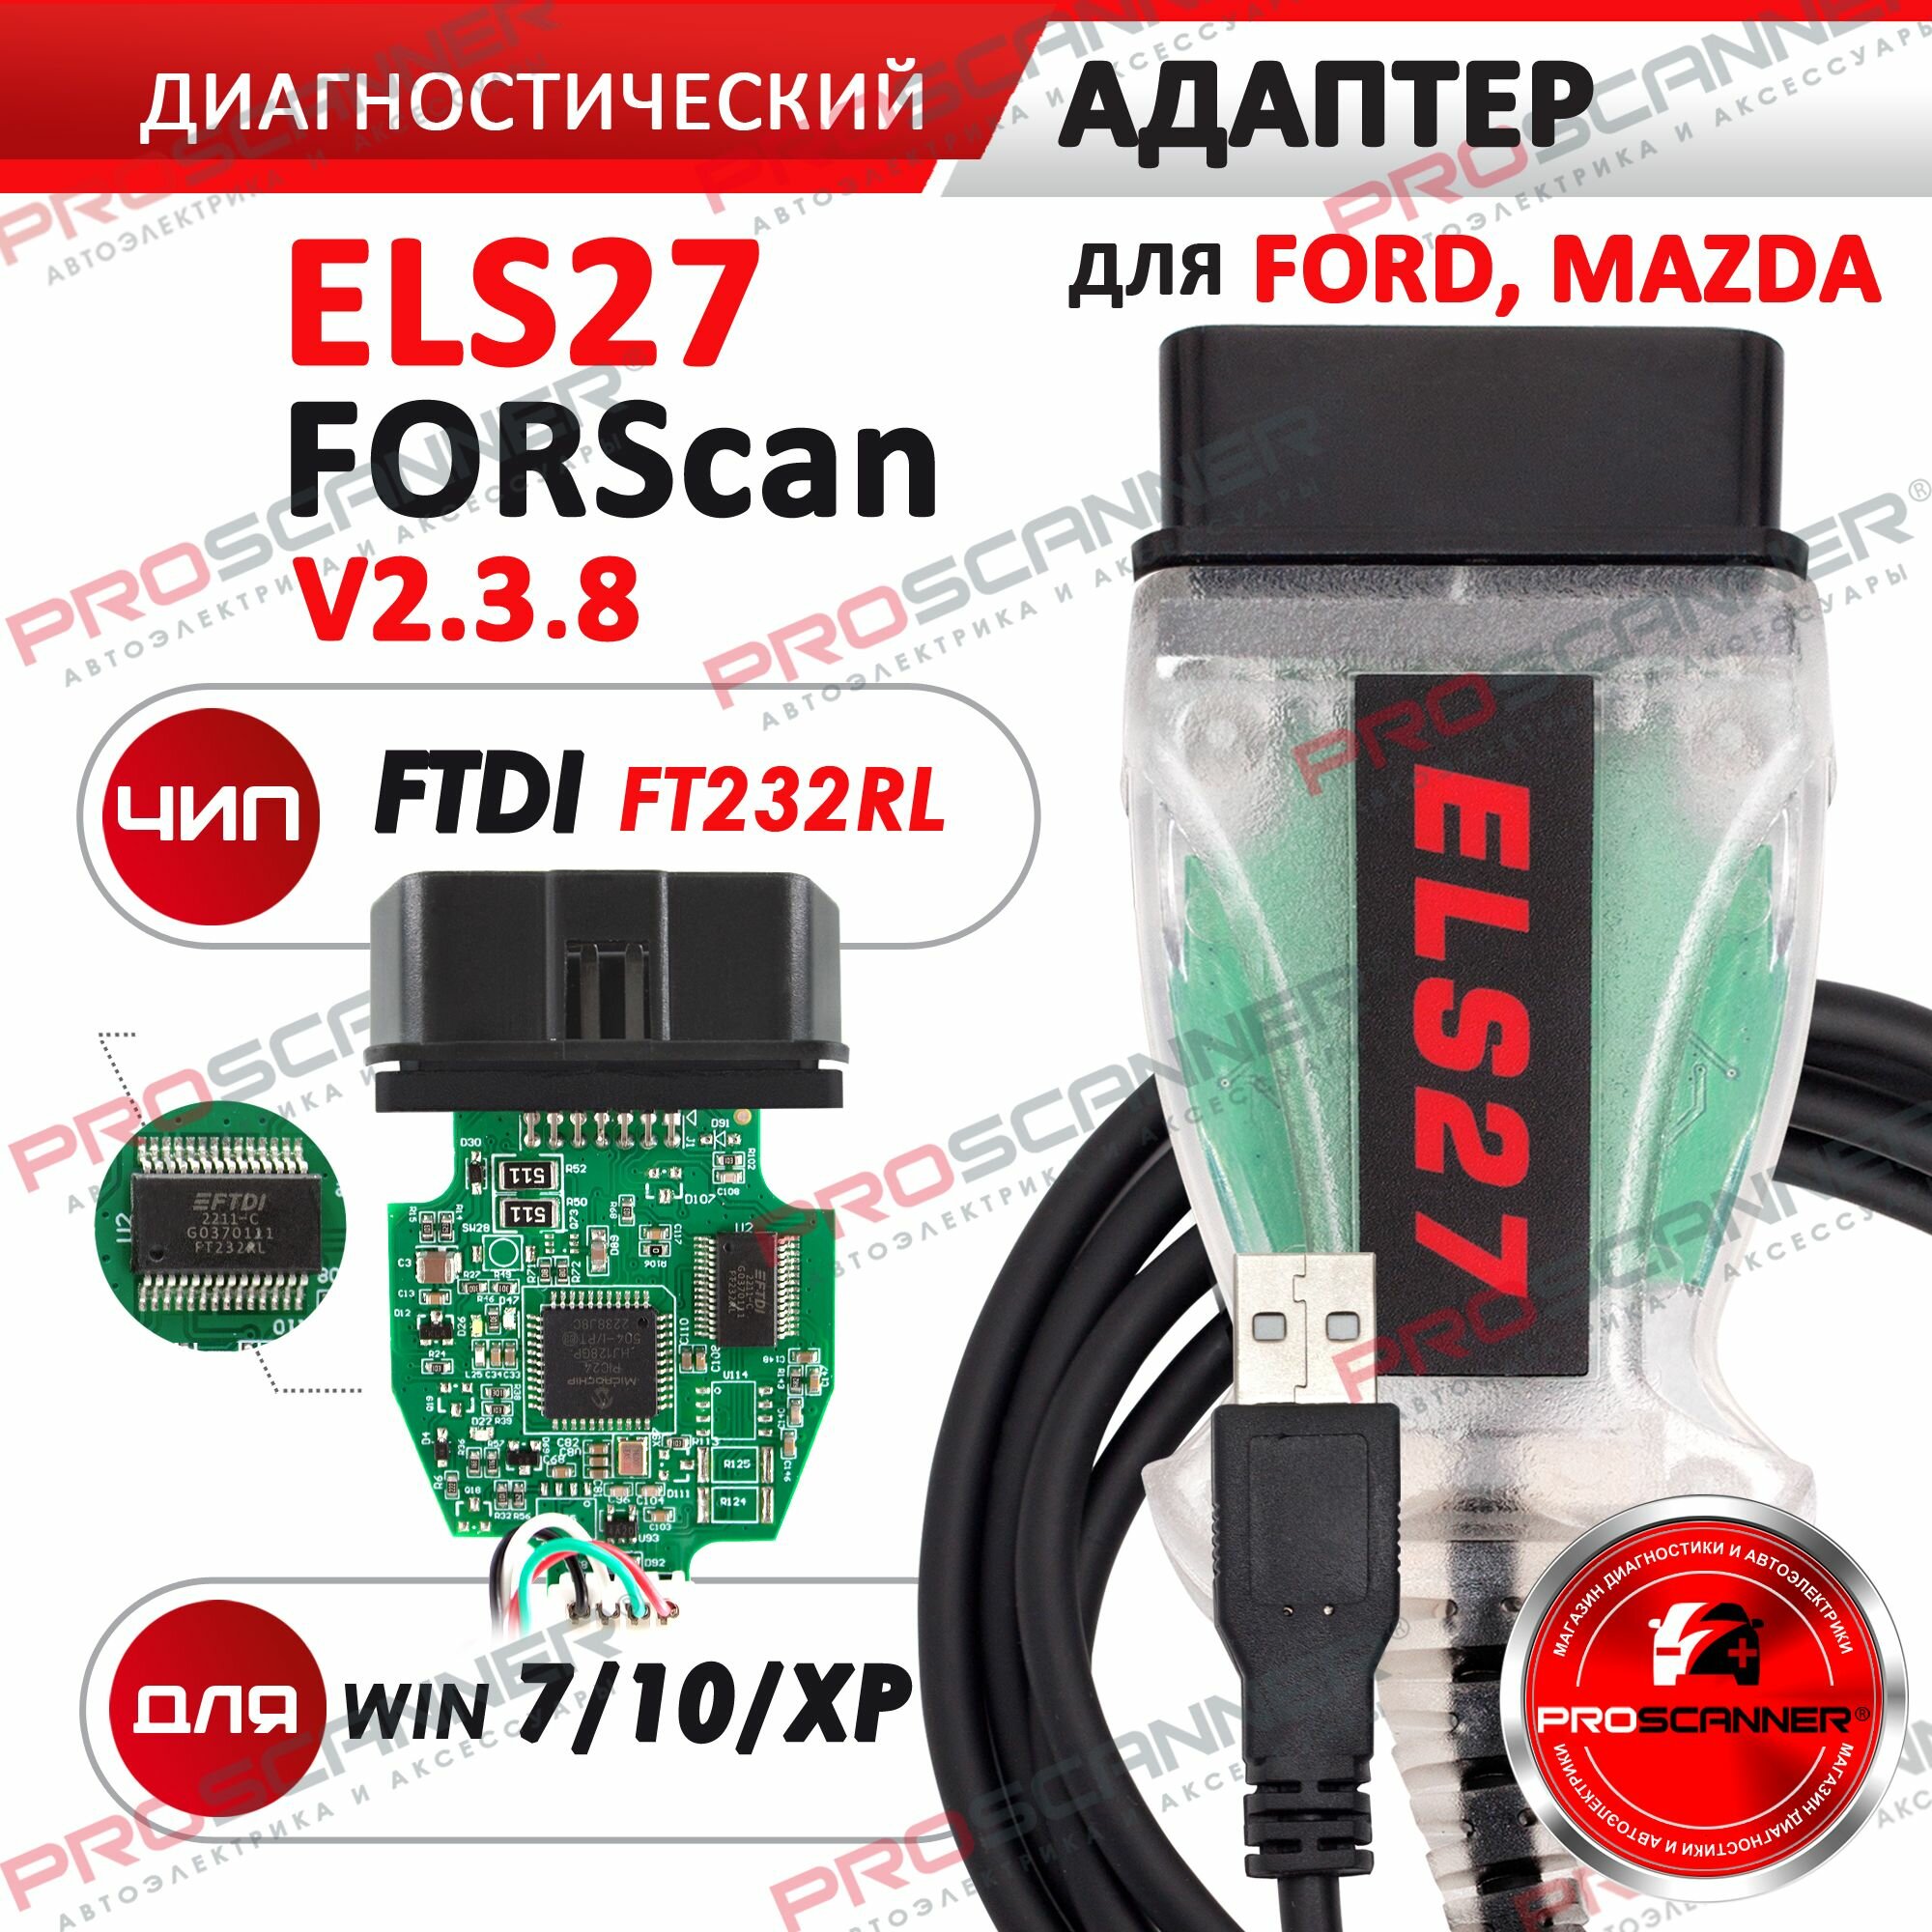 Автосканер ELS27 Ford и Mazda / чип FT232RL полная версия / адаптер диагностический ForScan ElmConfig